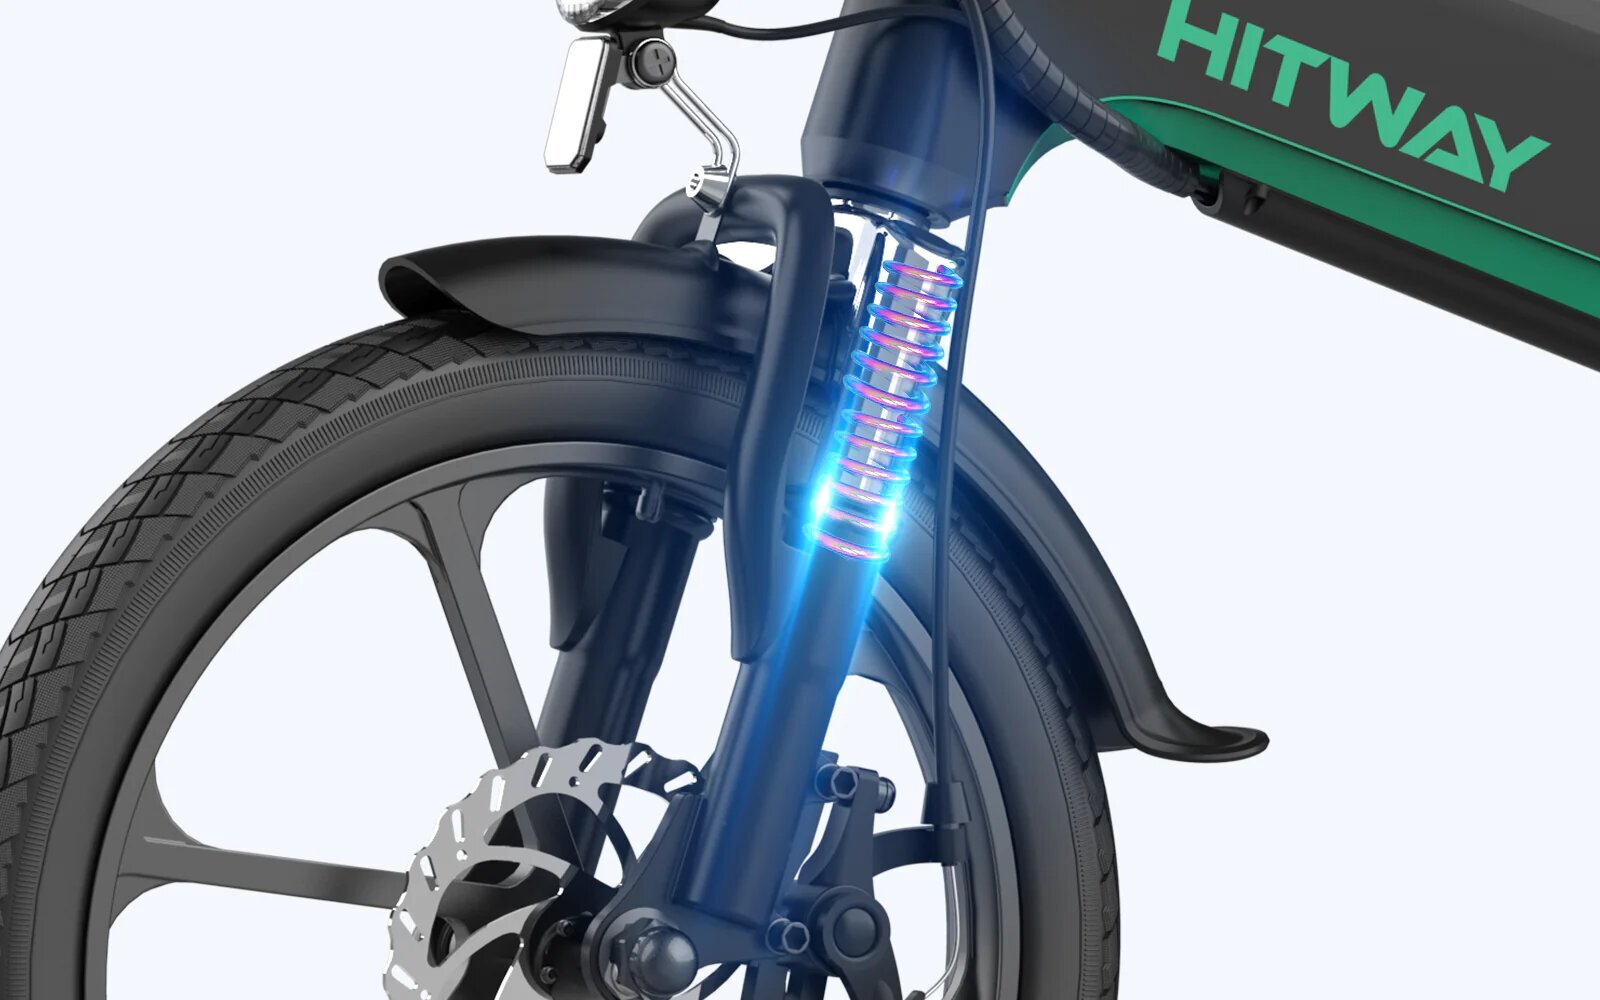 Elektriskais velosipēds Hitway BK2, 16", pelēks cena un informācija | Elektrovelosipēdi | 220.lv